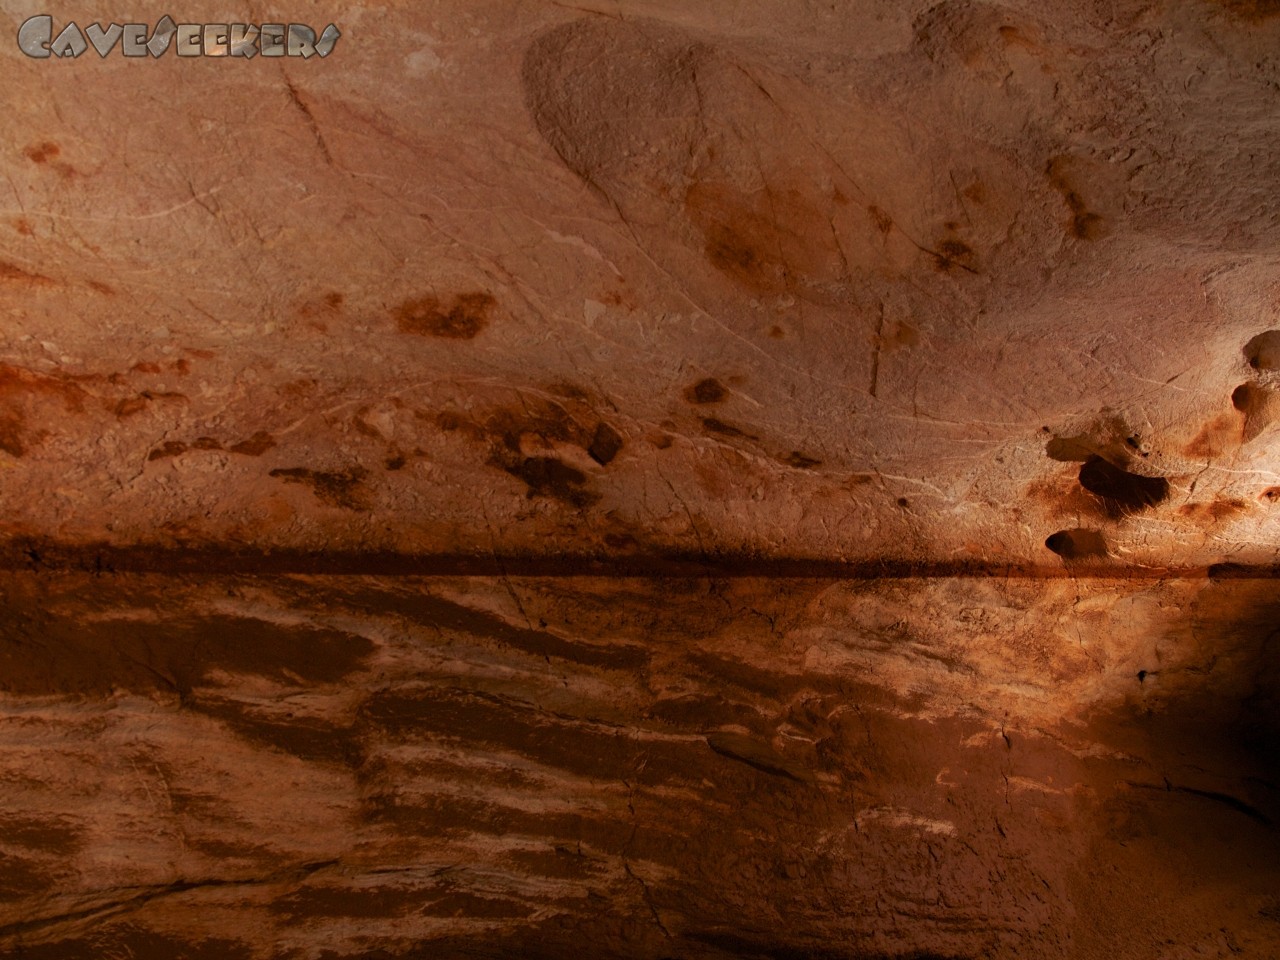 Grotta del Fico - Eine wunderbare Wassermarke. Schön in rot. Da man sich grob 50 Meter über dem Meeresspiegel befindet, muss wohl hier der Höhlenforscher erst noch einige Markierungsversuche gestalten, um herauszufinden, wie das wohl passiert ist.